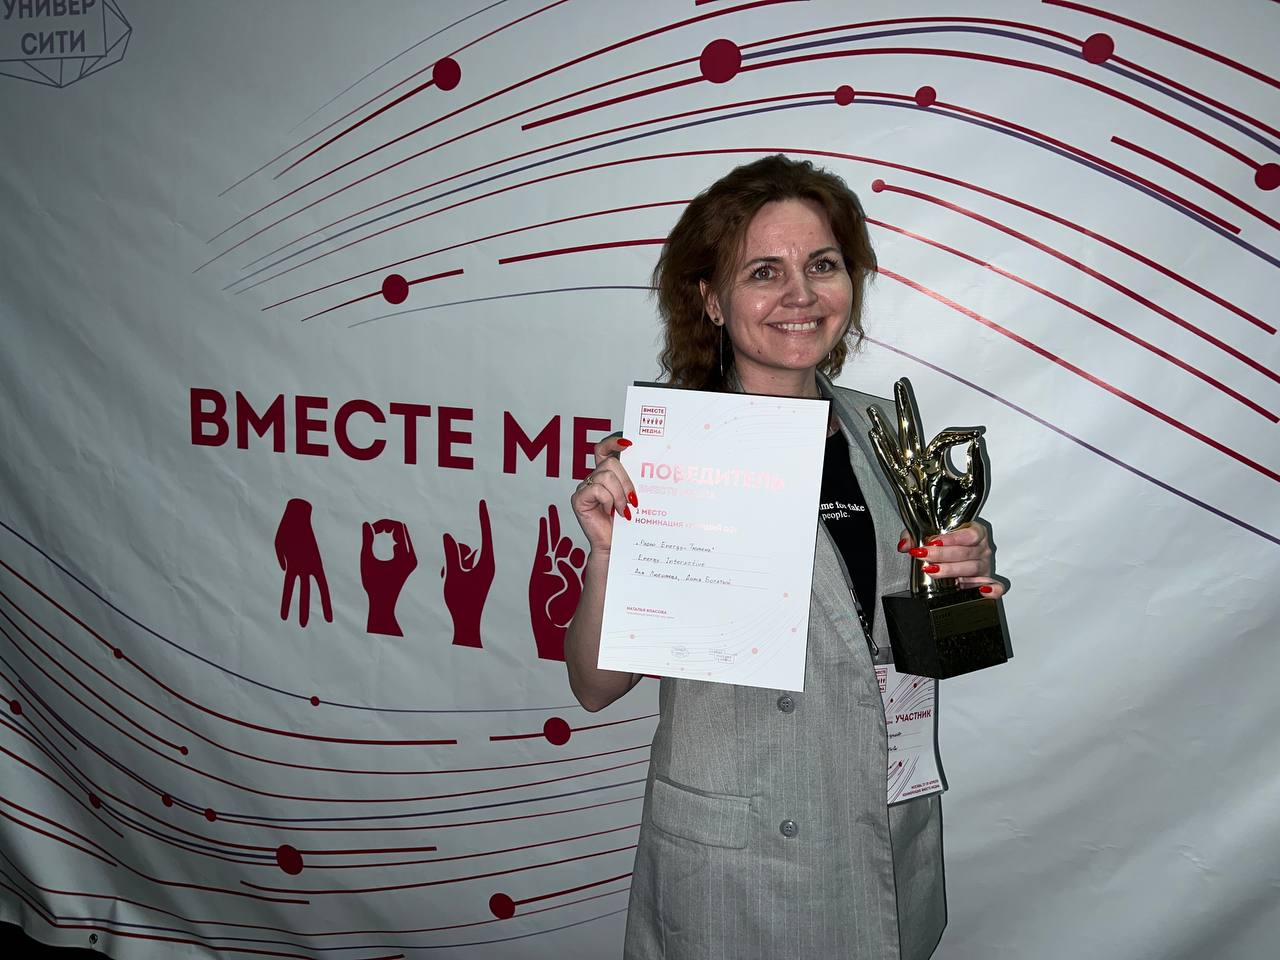 Радиоведущие из Тюмени победили в номинации "Лучший DJ" на конкурсе "Вместе Медиа"